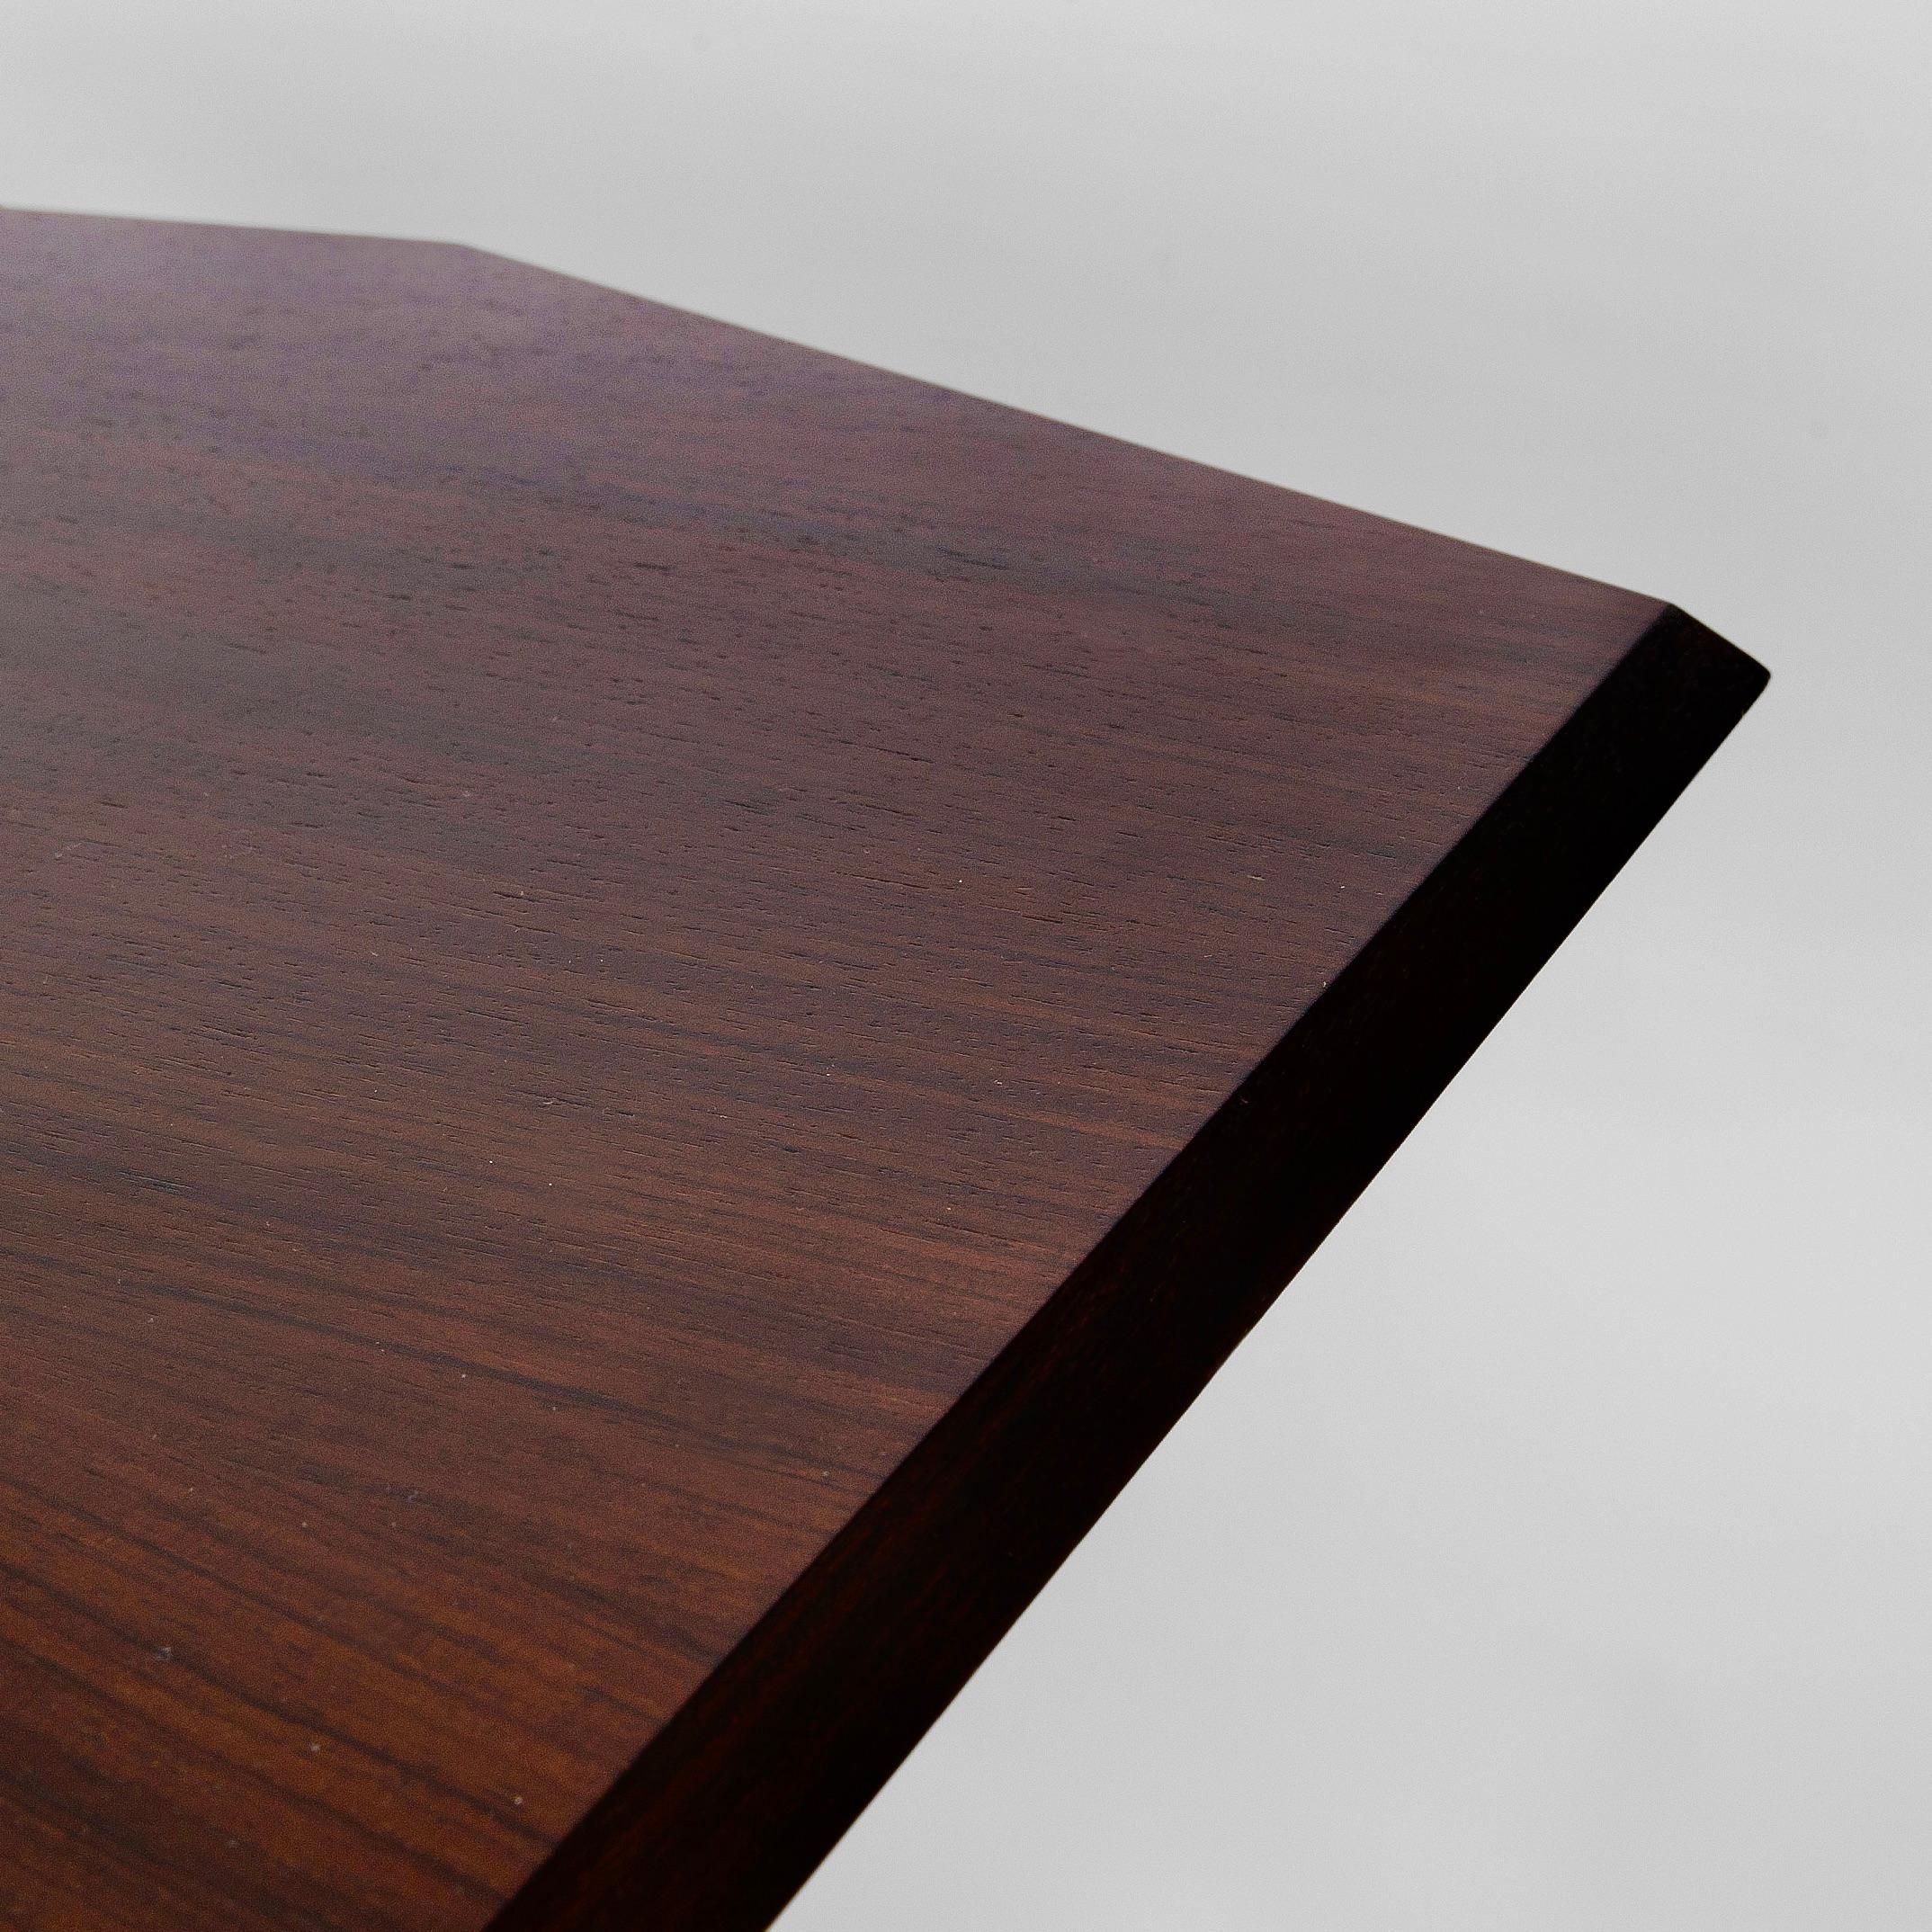 Rare Mahogany 'TL2' Cavalletto Table / Desk by Franco Albini for Poggi, Italy In Good Condition For Sale In London, GB